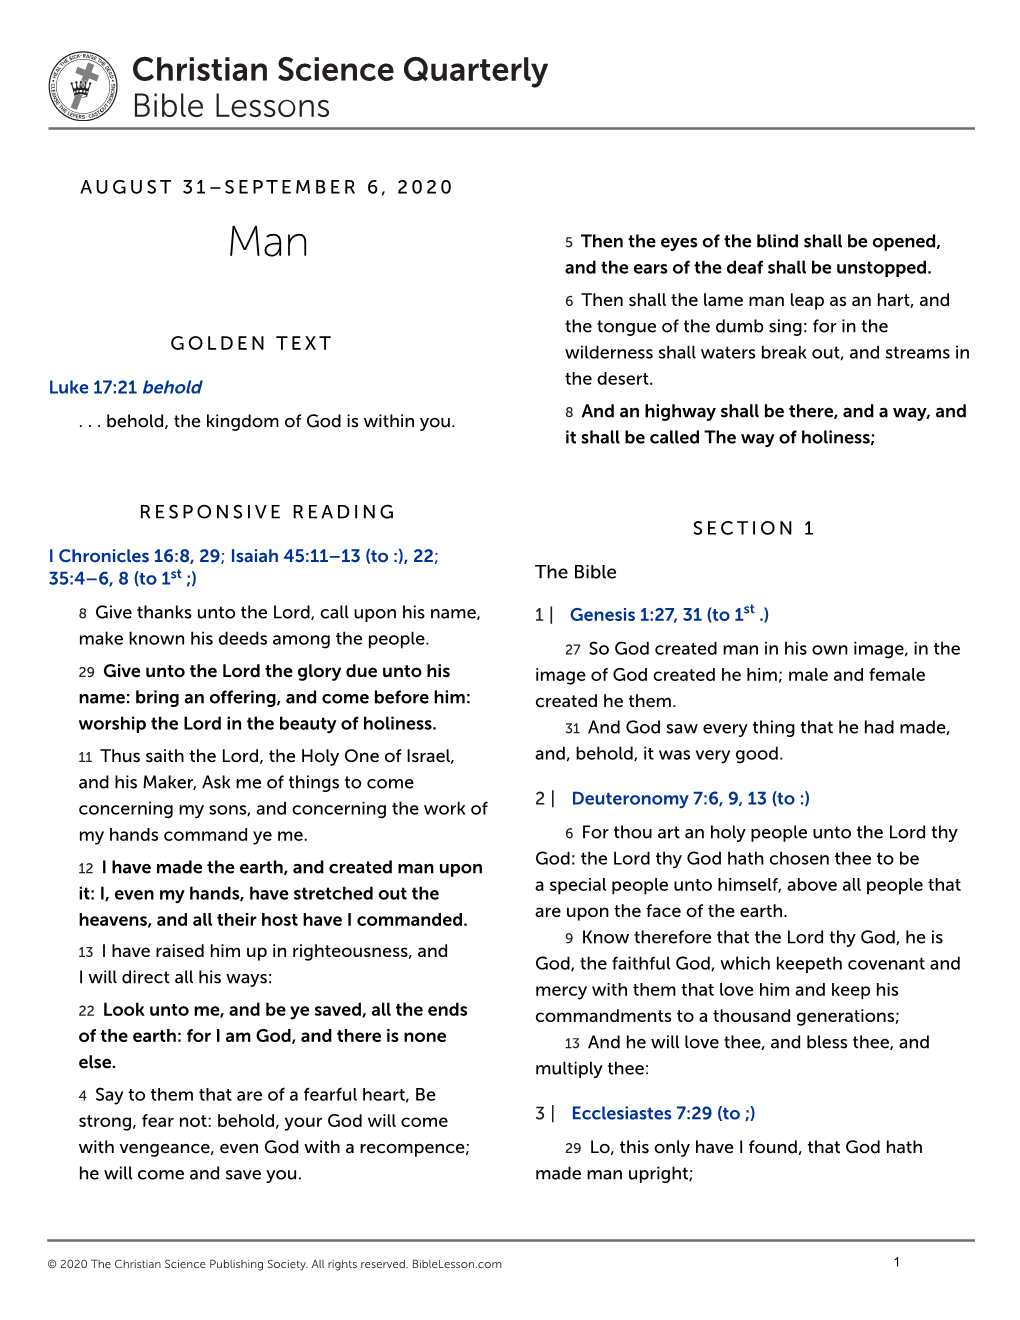 August 31–September 6, 2020 Golden Text Responsive